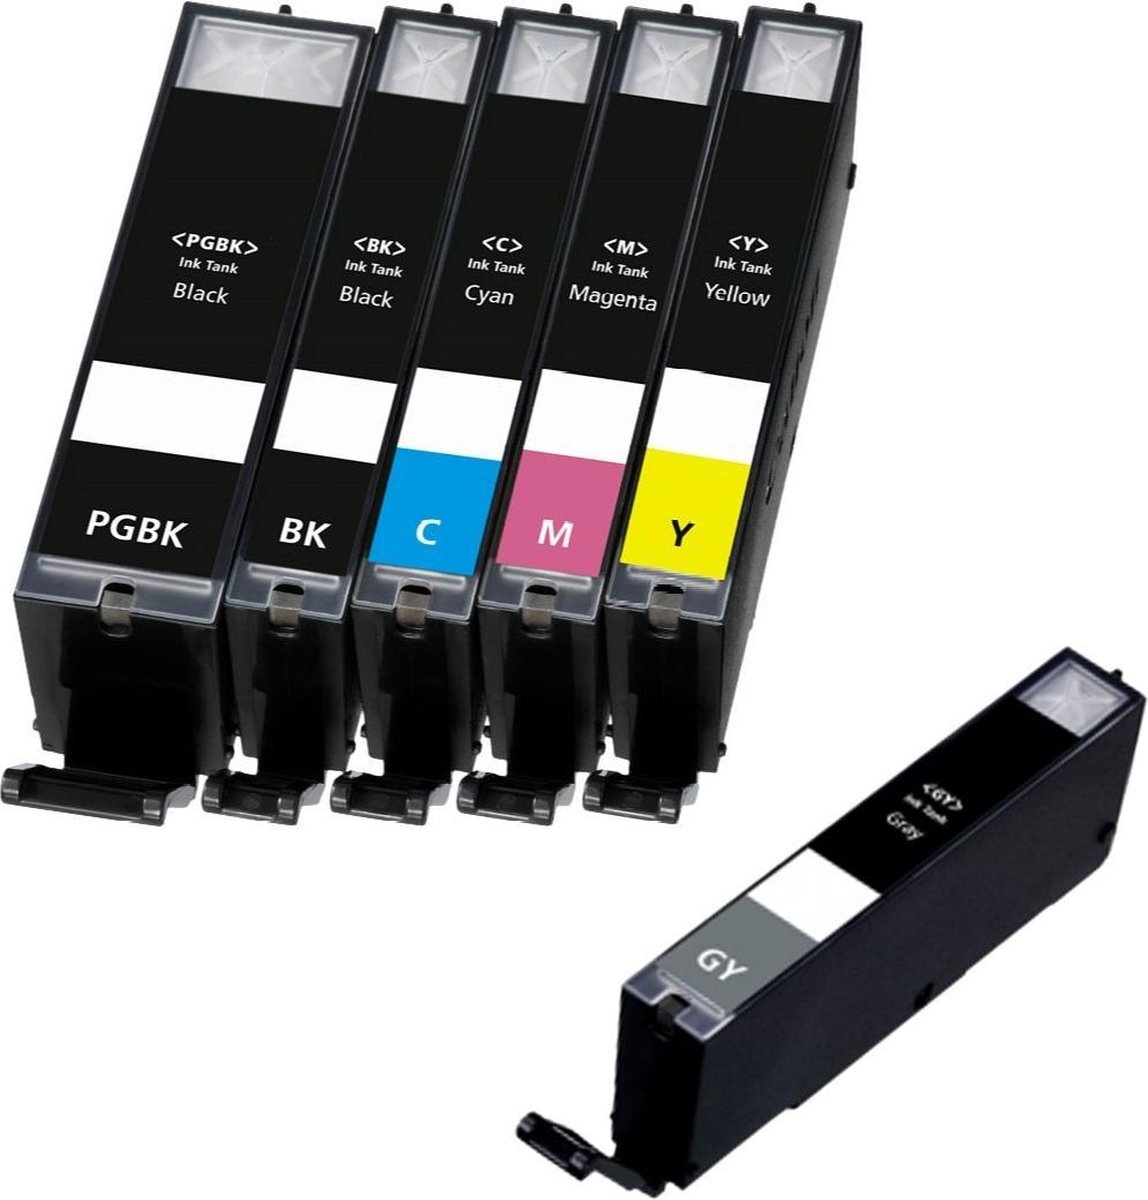 InktDL Compatible inkt cartridges voor Canon PGI-550XL / CLI-551XL | Multipack van 6 inktcartridges (+Grijs) voor Canon Pixma IP8700, IP8750, MG6300, MG6350, MG7100, MG7150, MG7500, MG7550